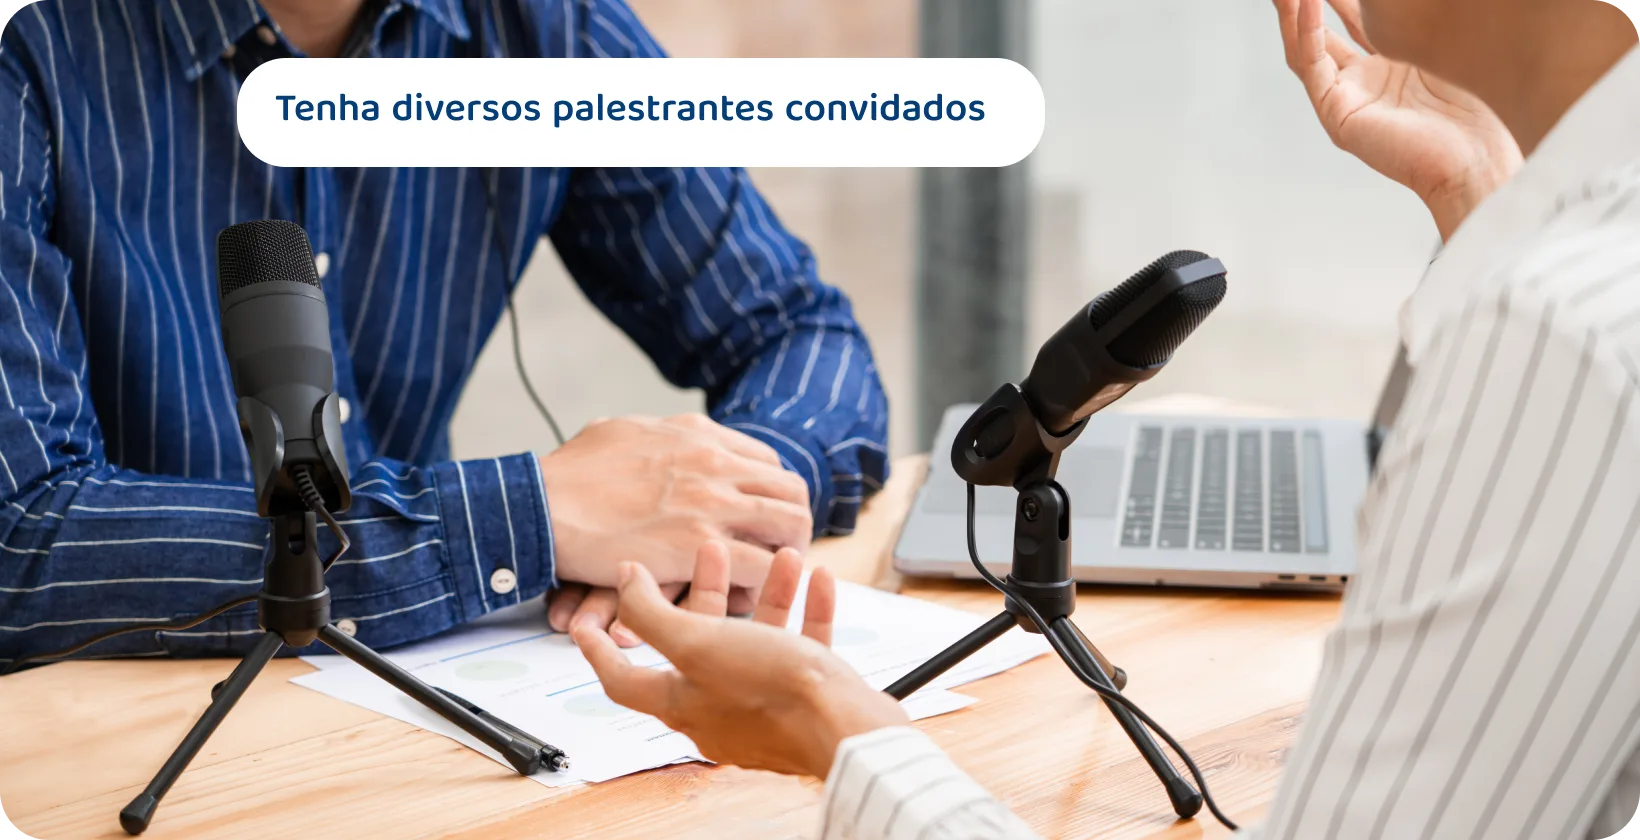 Dois podcasters com microfones discutindo podem ser as dicas de conteúdo para sessões envolventes e diversificadas de palestrantes convidados.